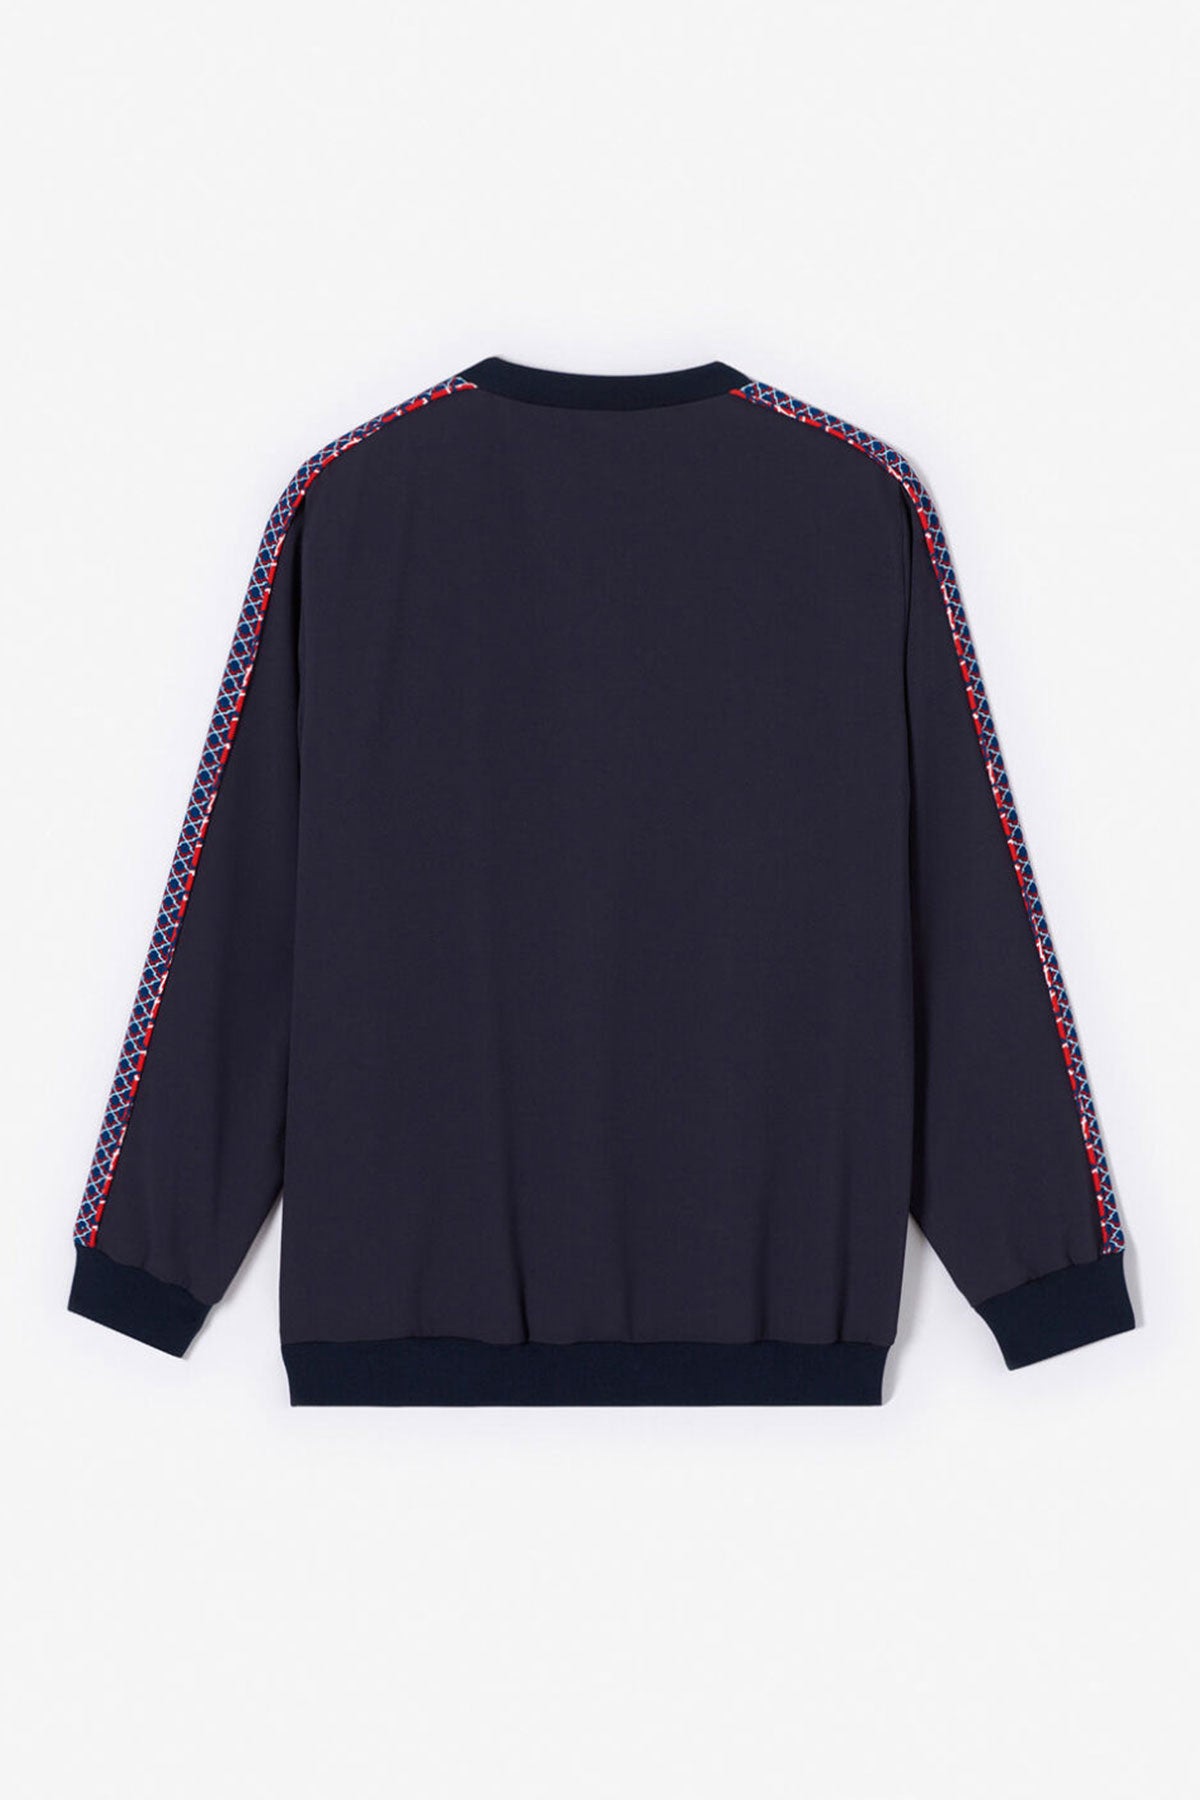 Kenzo Sweatshirt-Libas Trendy Fashion Store